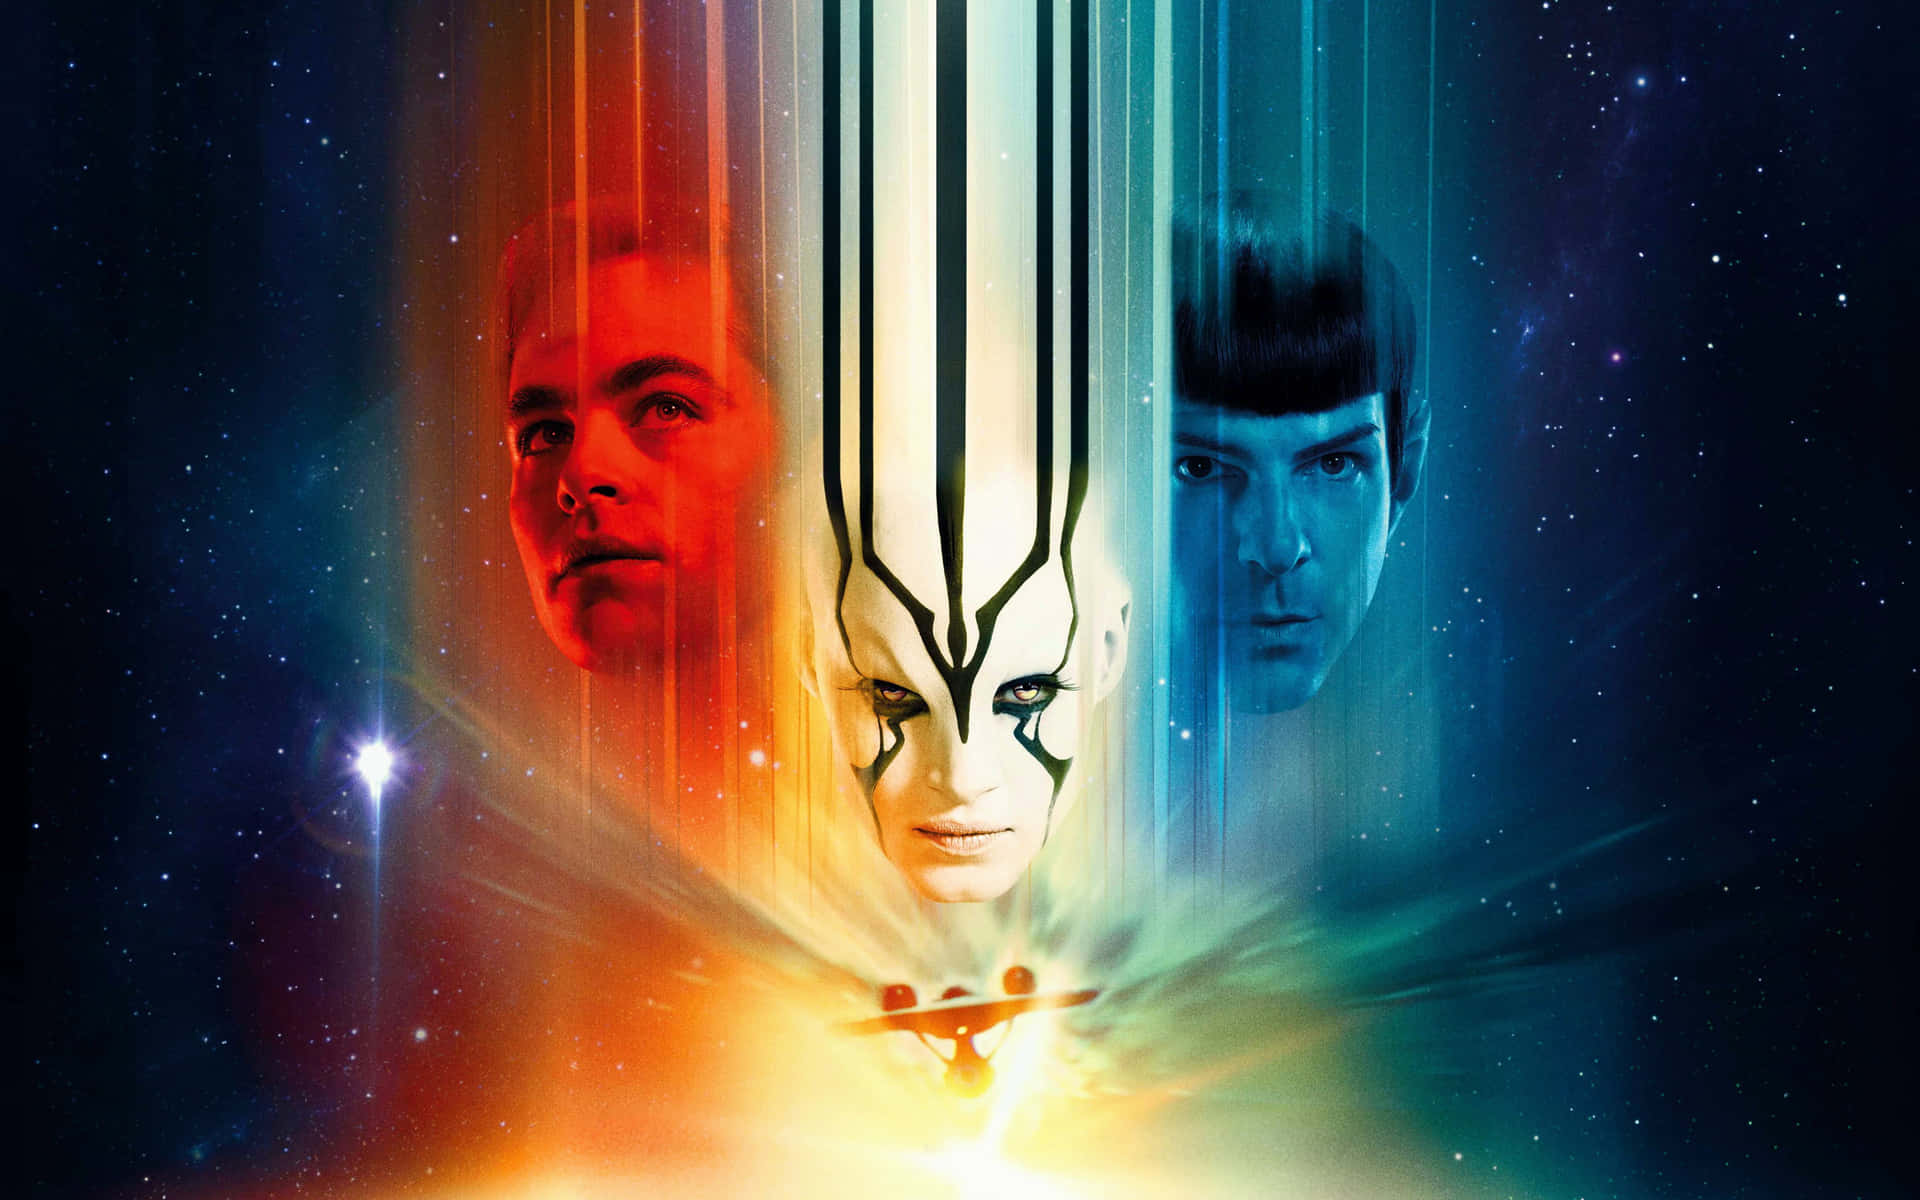 Star Trek Background